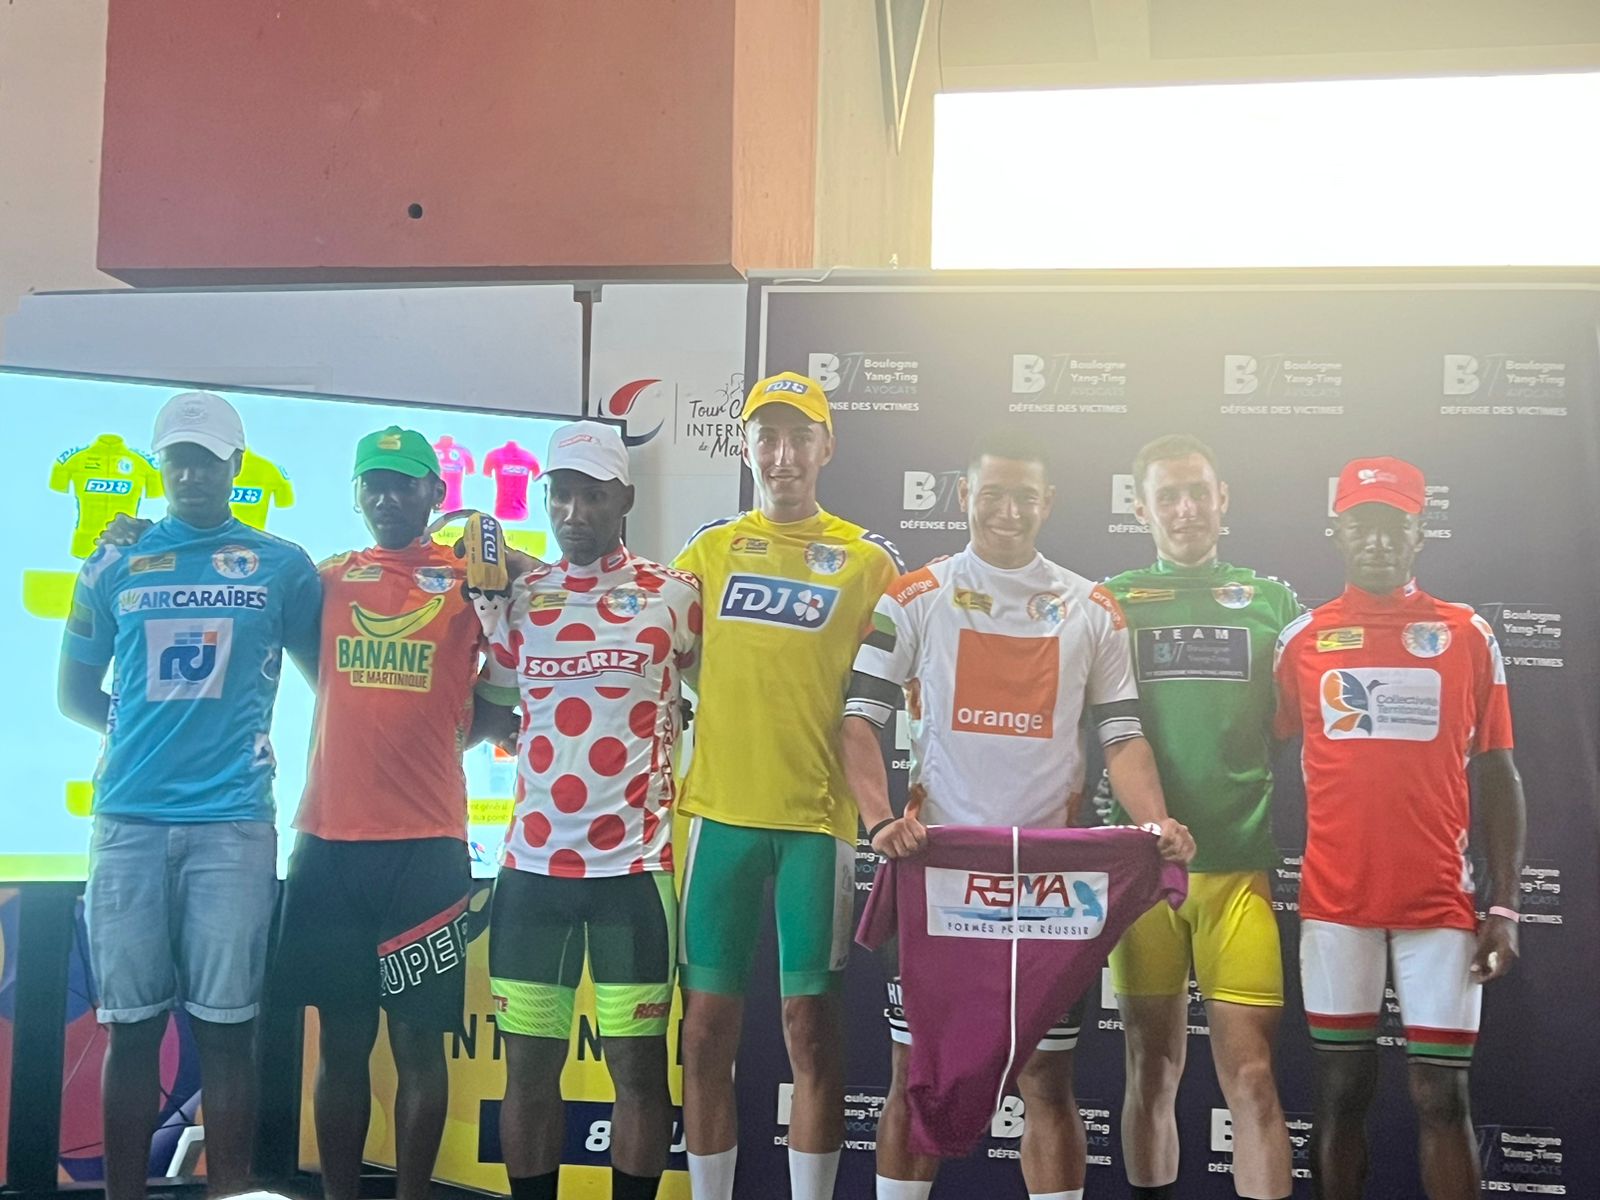     Tour cycliste de Martinique : la sélection de Guadeloupe fait bonne figure

